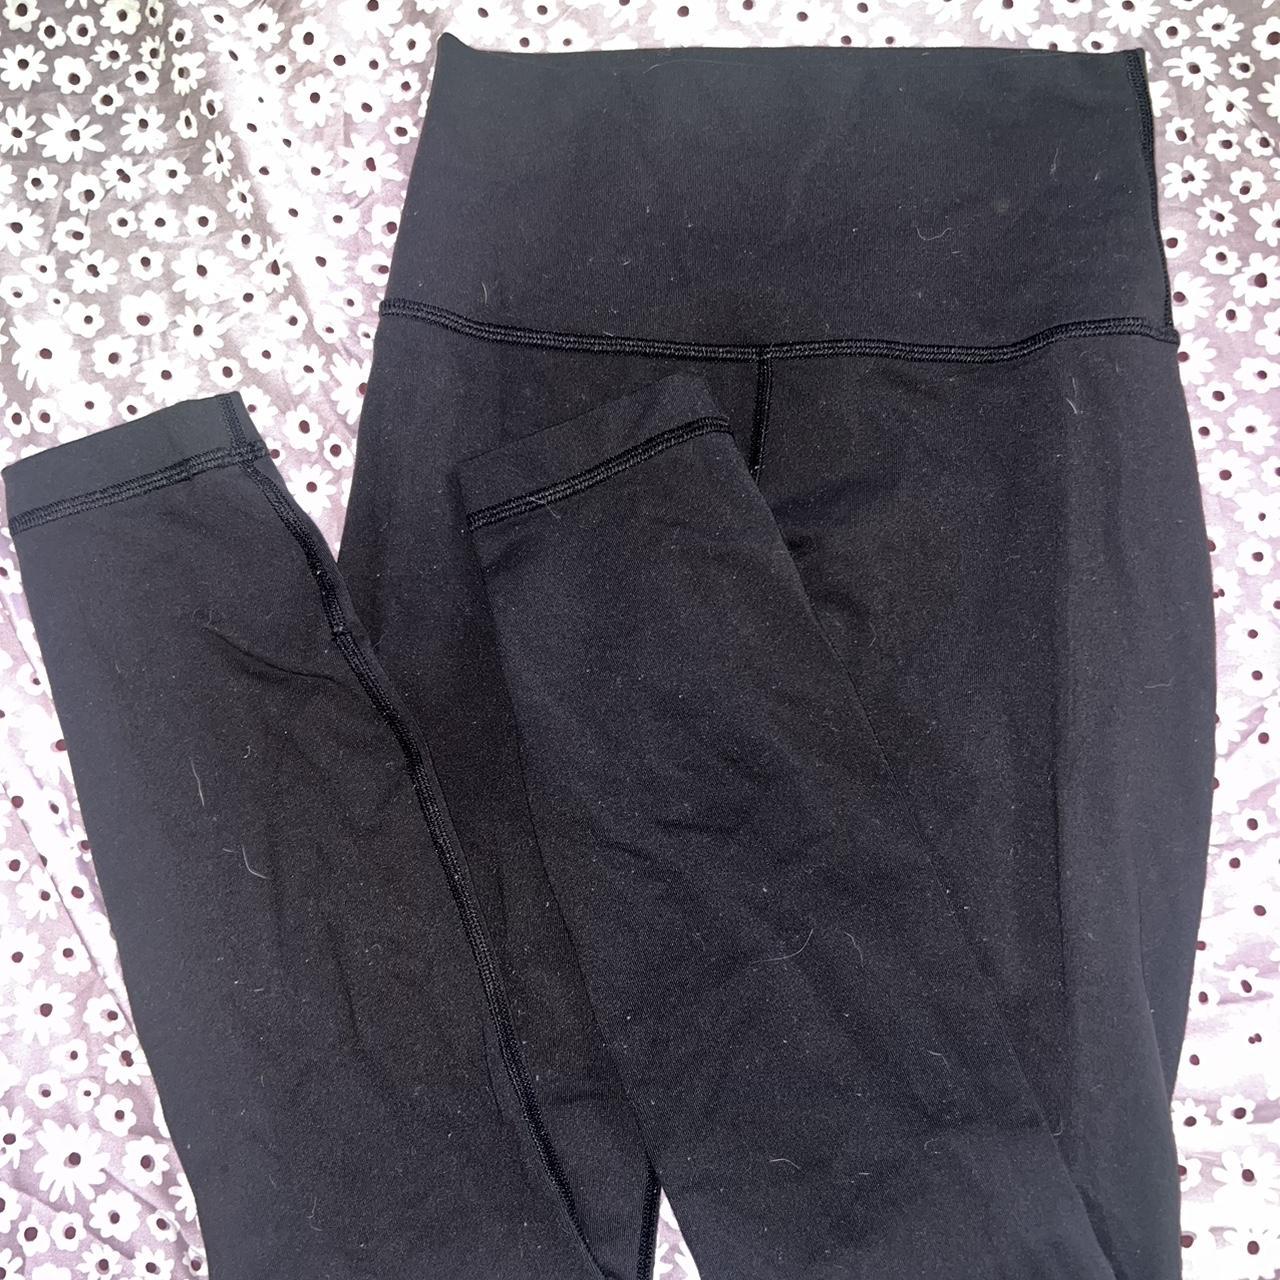 Lululemon black aligned leggings / size: 0 - Depop